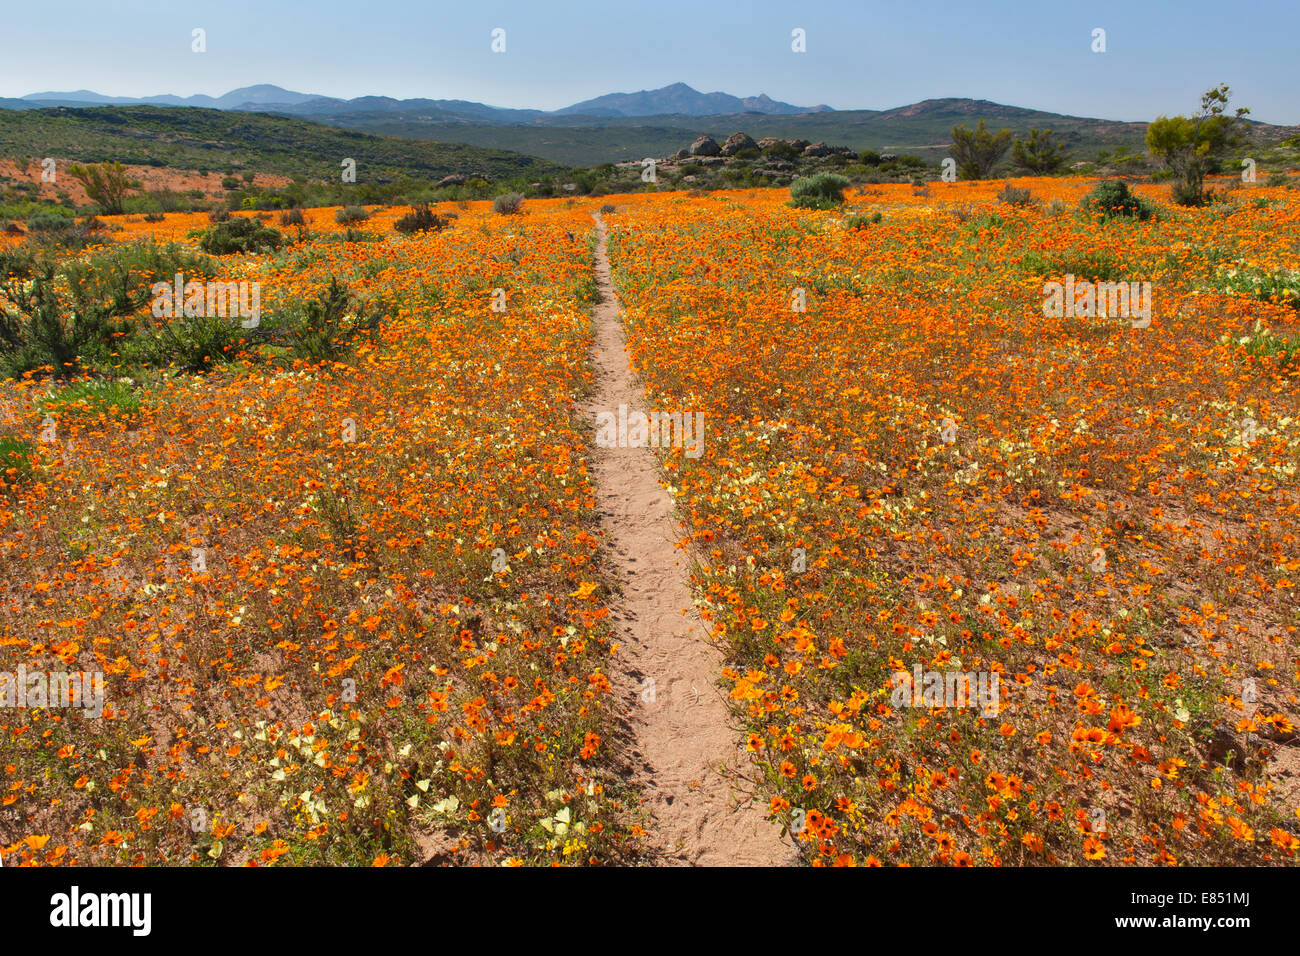 La Korhaan sendero a través de campos de flores silvestres en el Parque Nacional Namaqua en Sudáfrica. Foto de stock